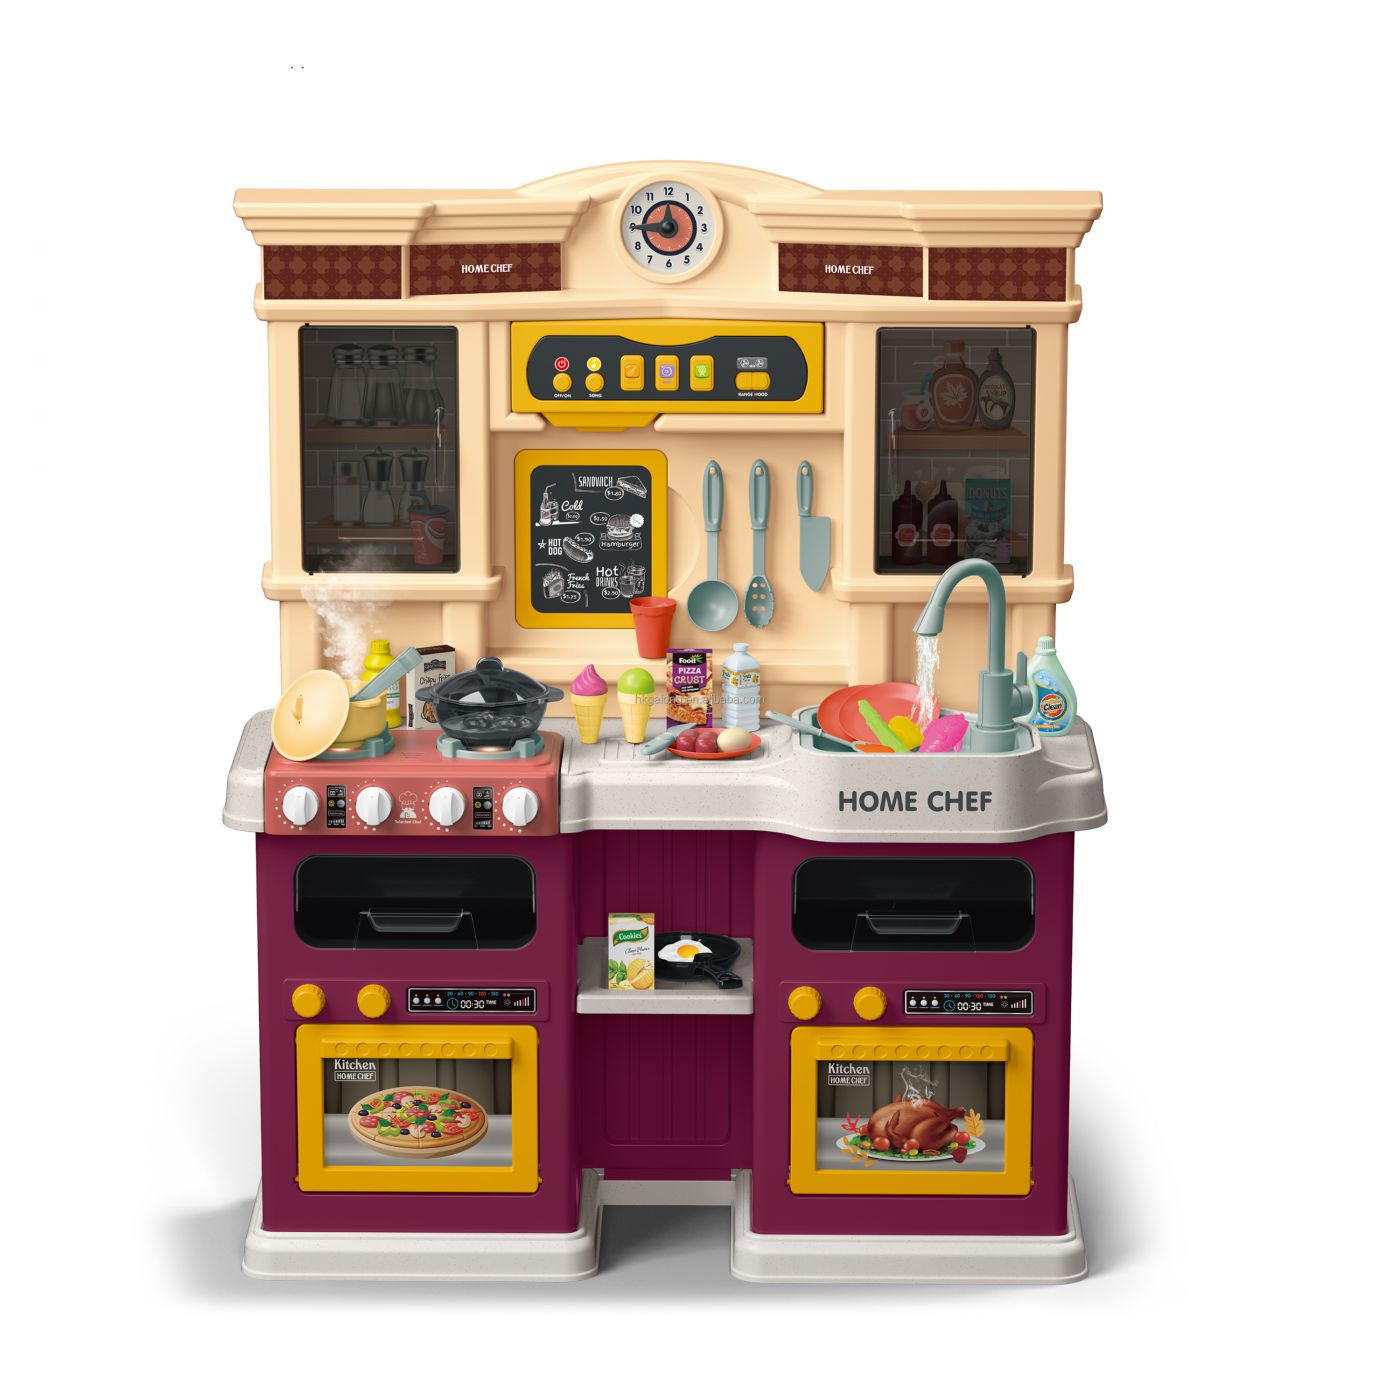 Детская игровая кухня с двумя духовками и буфетом с паром, водой, звуками, 73 аксессуара (922-135)